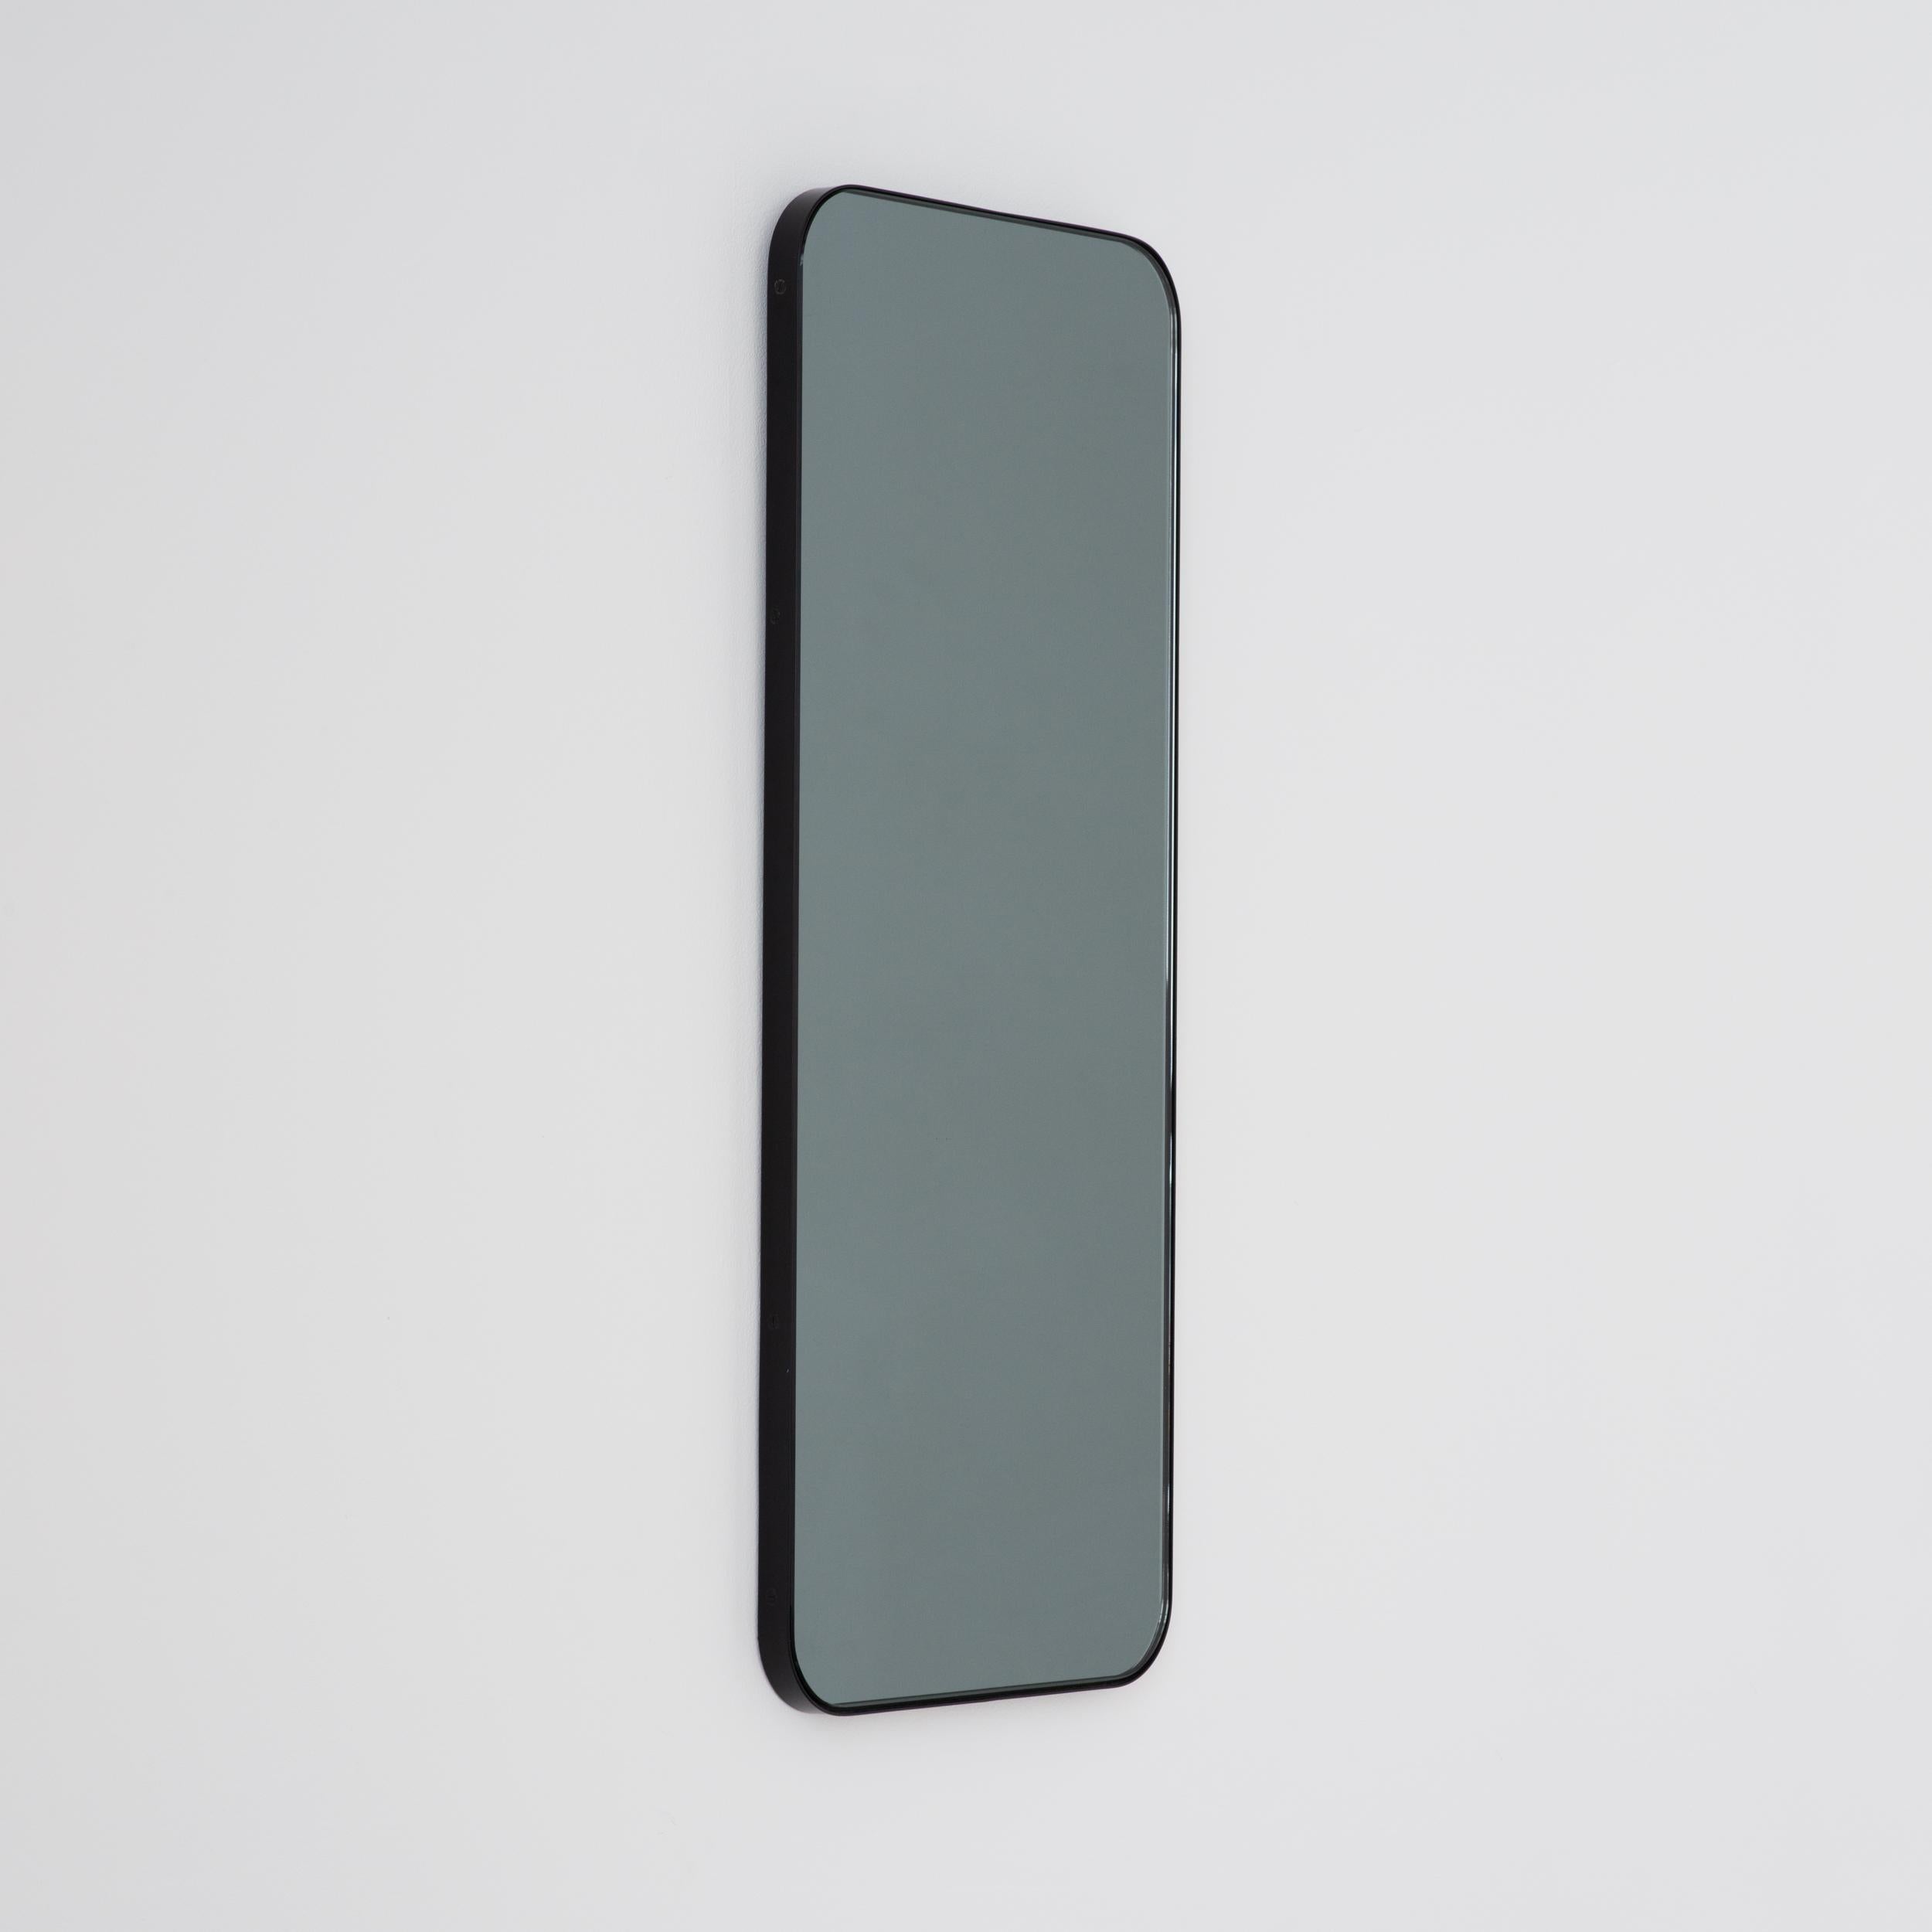 rectangular black framed mirror